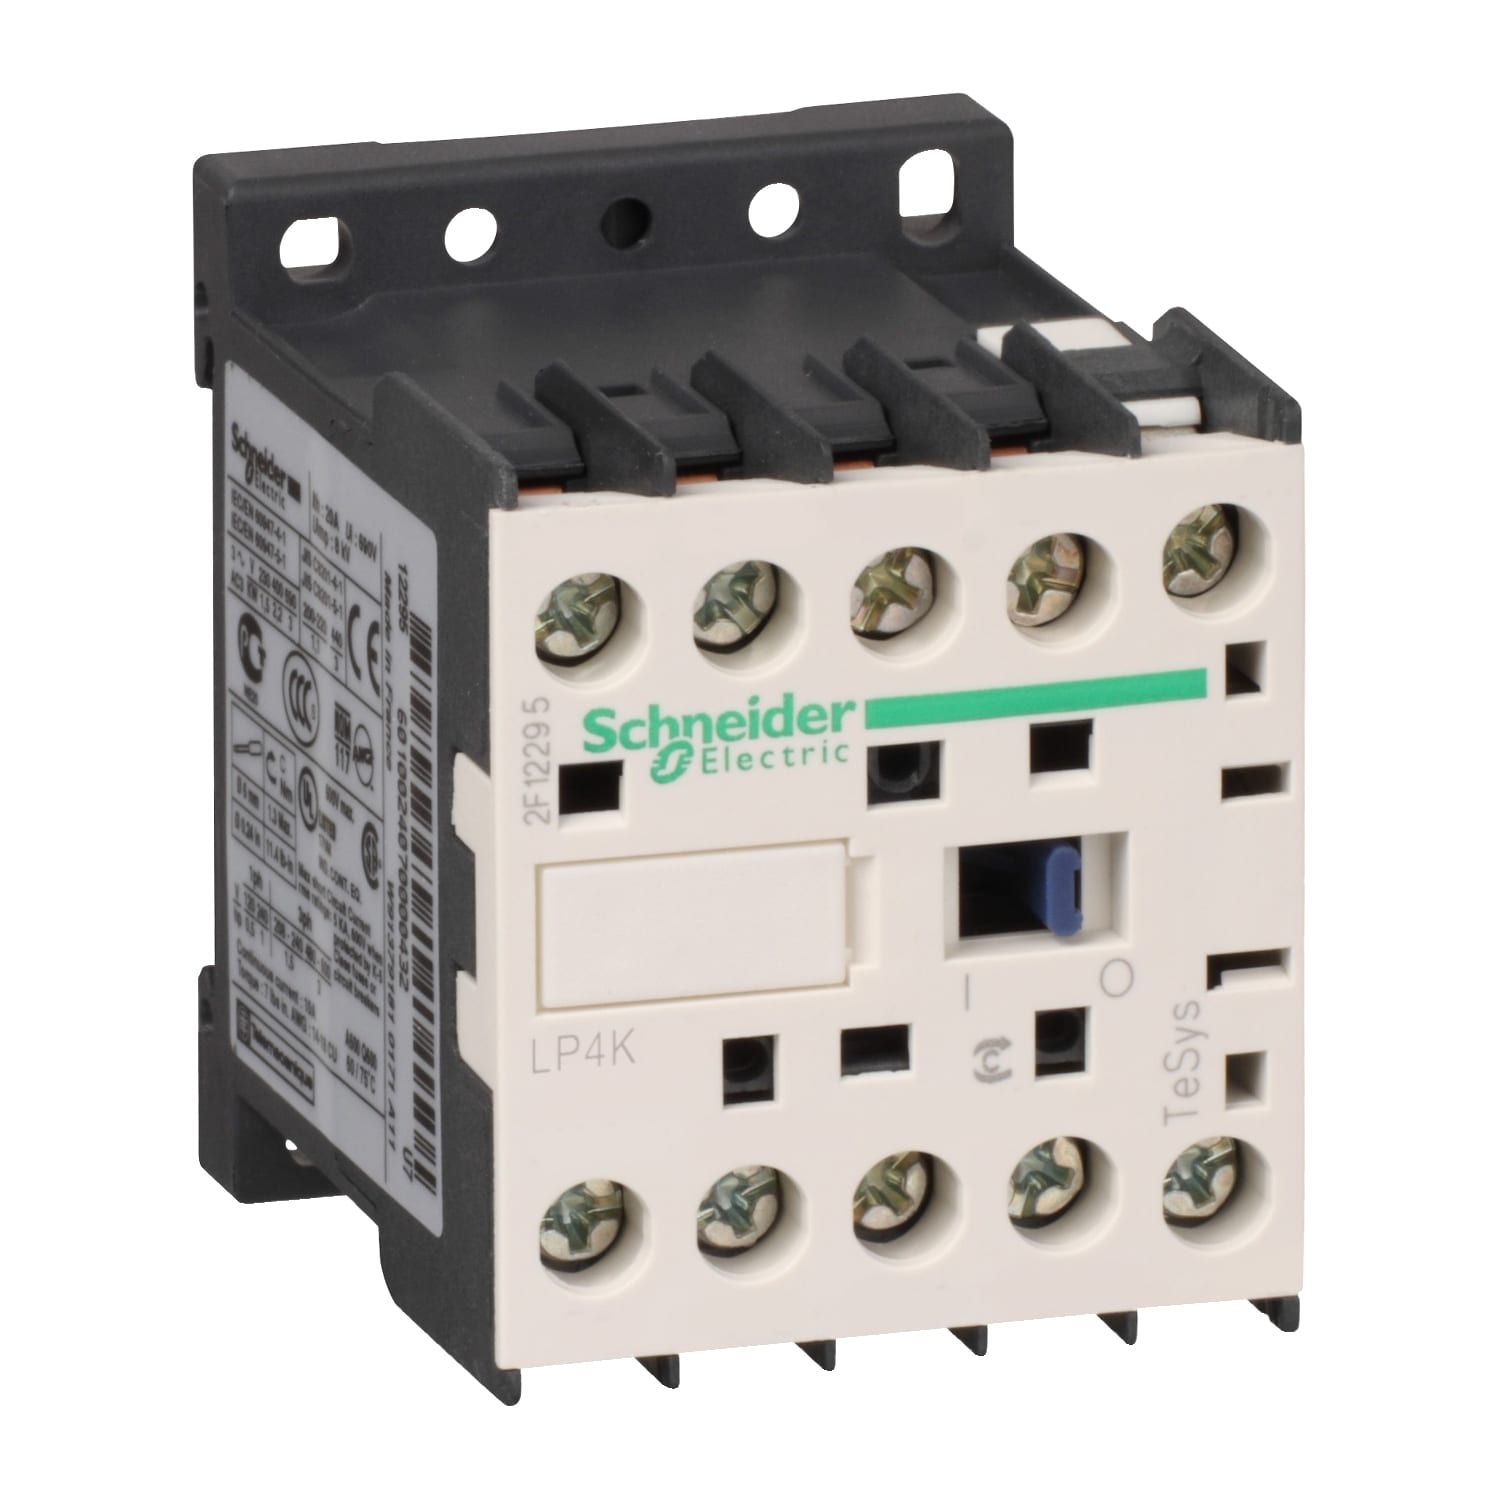 Schneider Electric - TeSys LP4K - contacteur - 3P - AC-3 440V - 6A - bobine 24Vcc